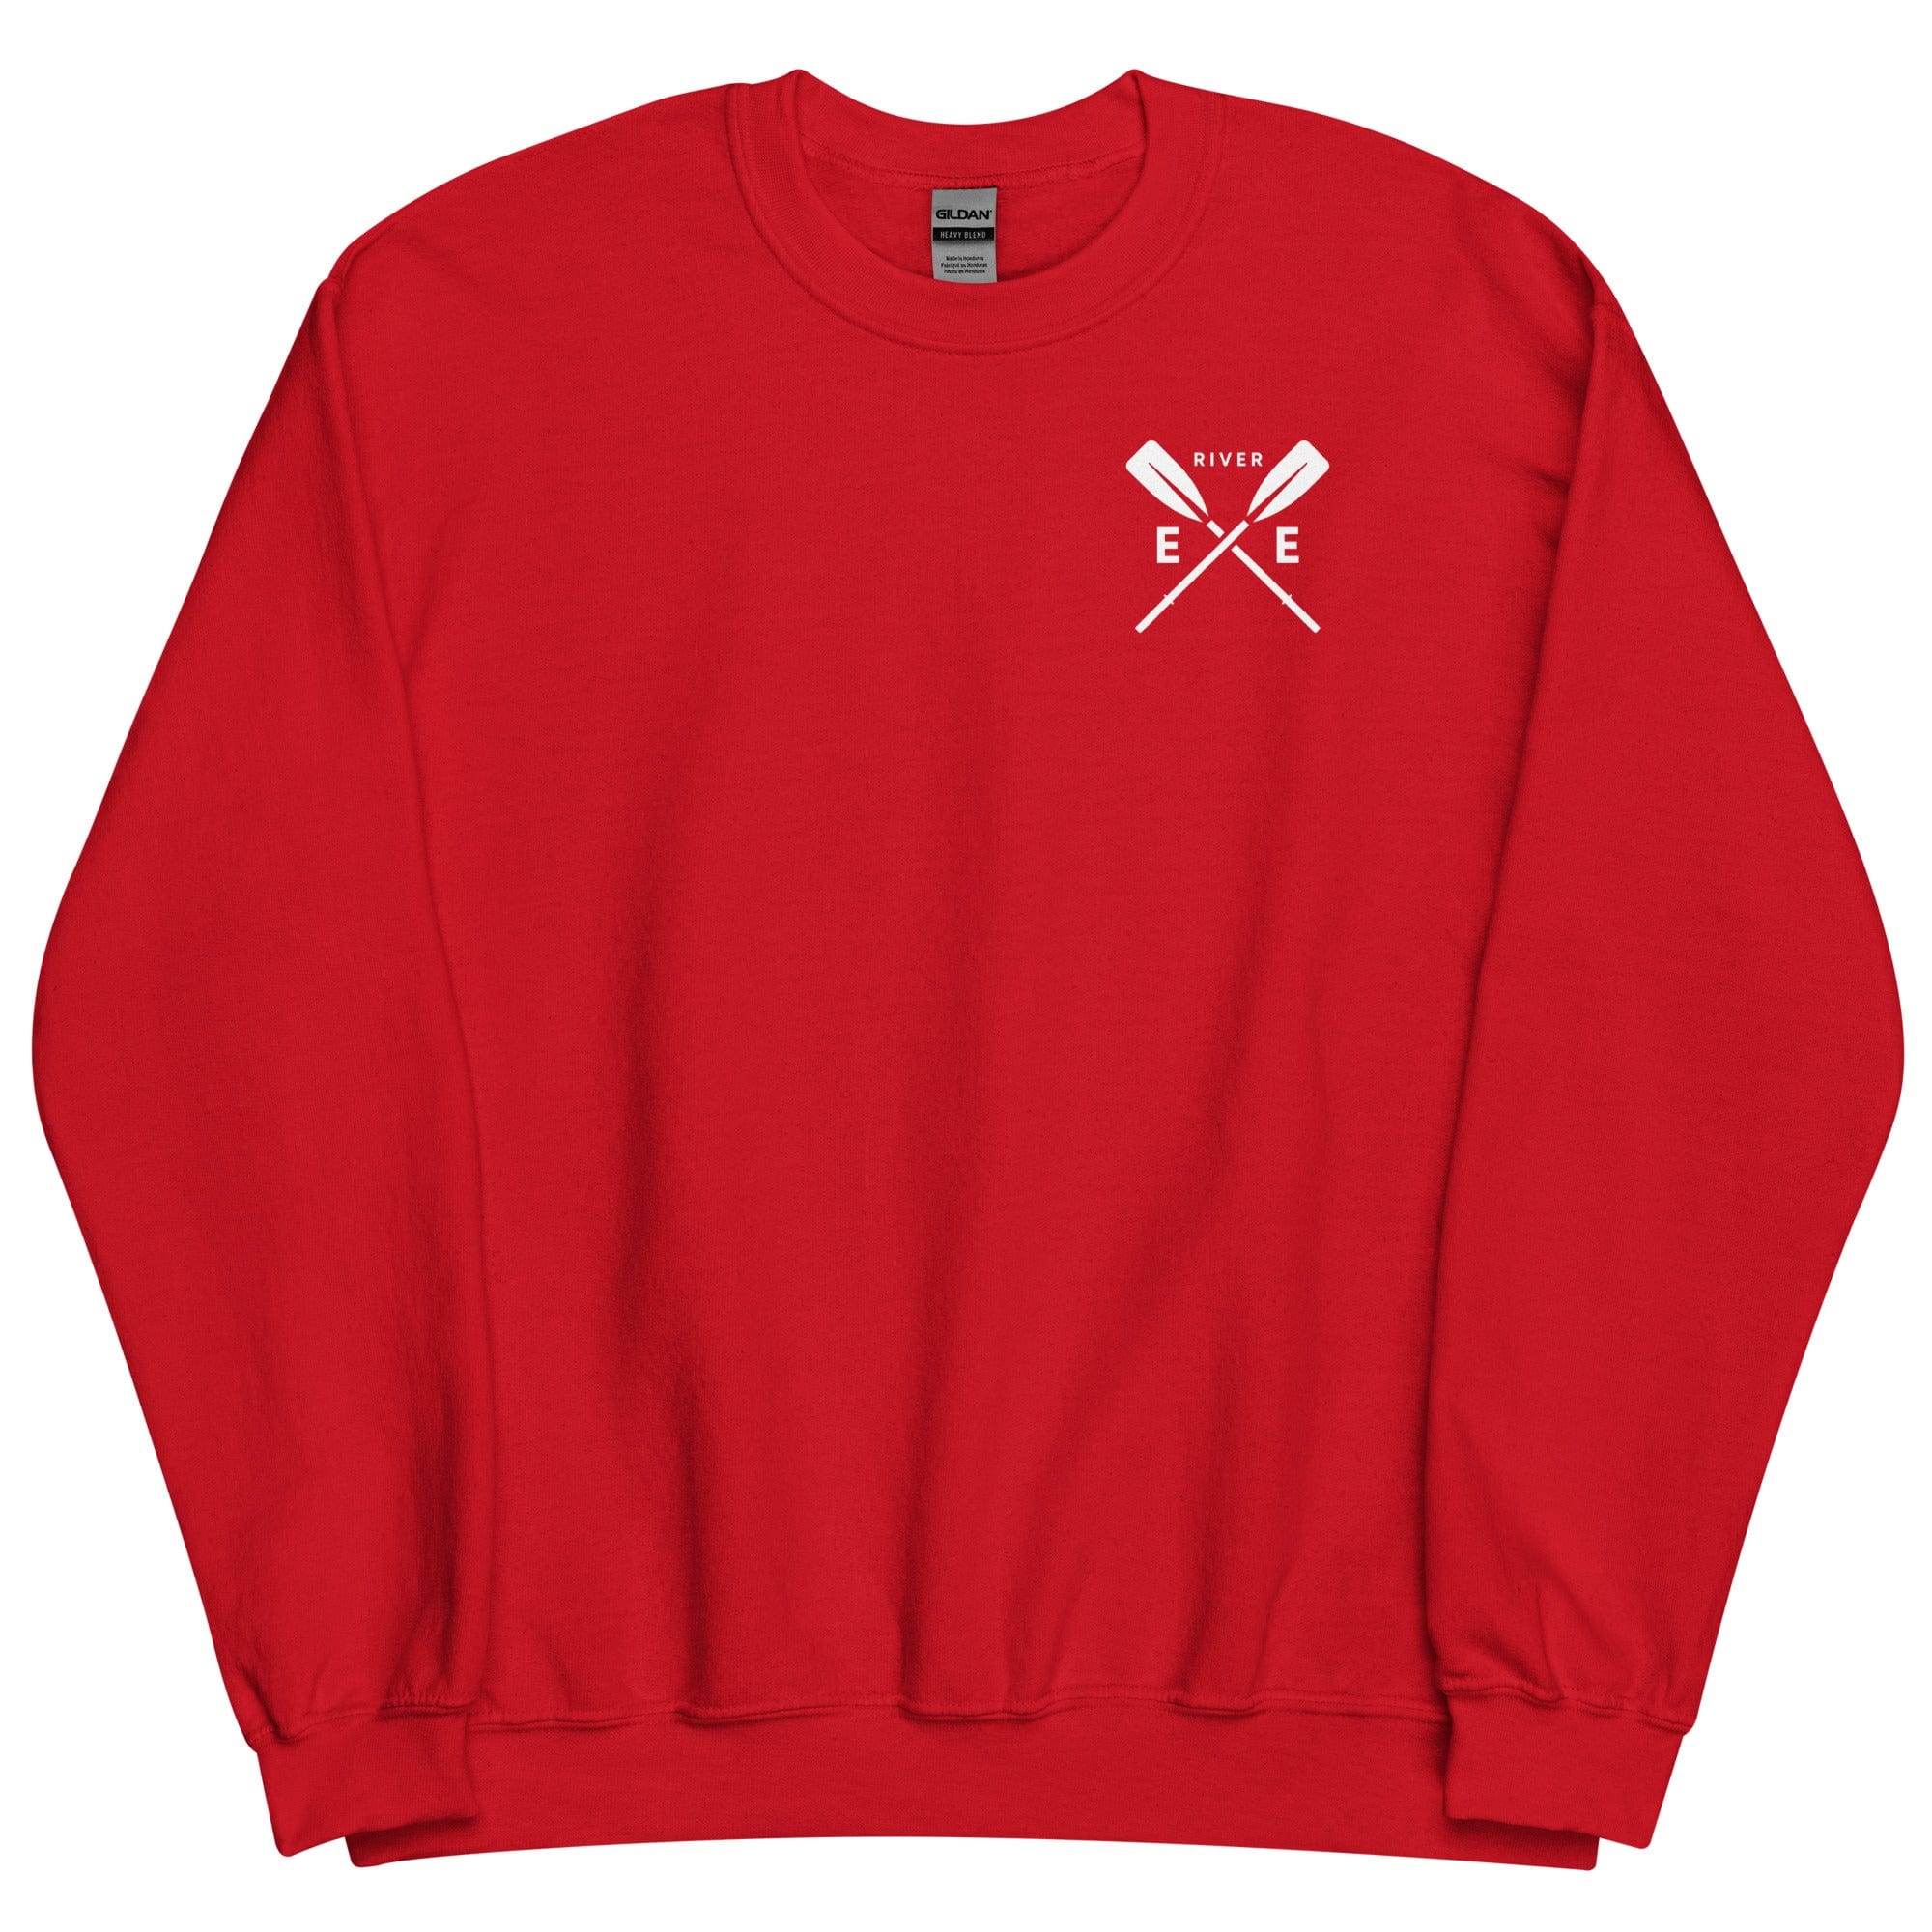 River Exe Sweatshirt Jumper | Exeter Gift Shop Red / S Sweatshirt Jolly & Goode